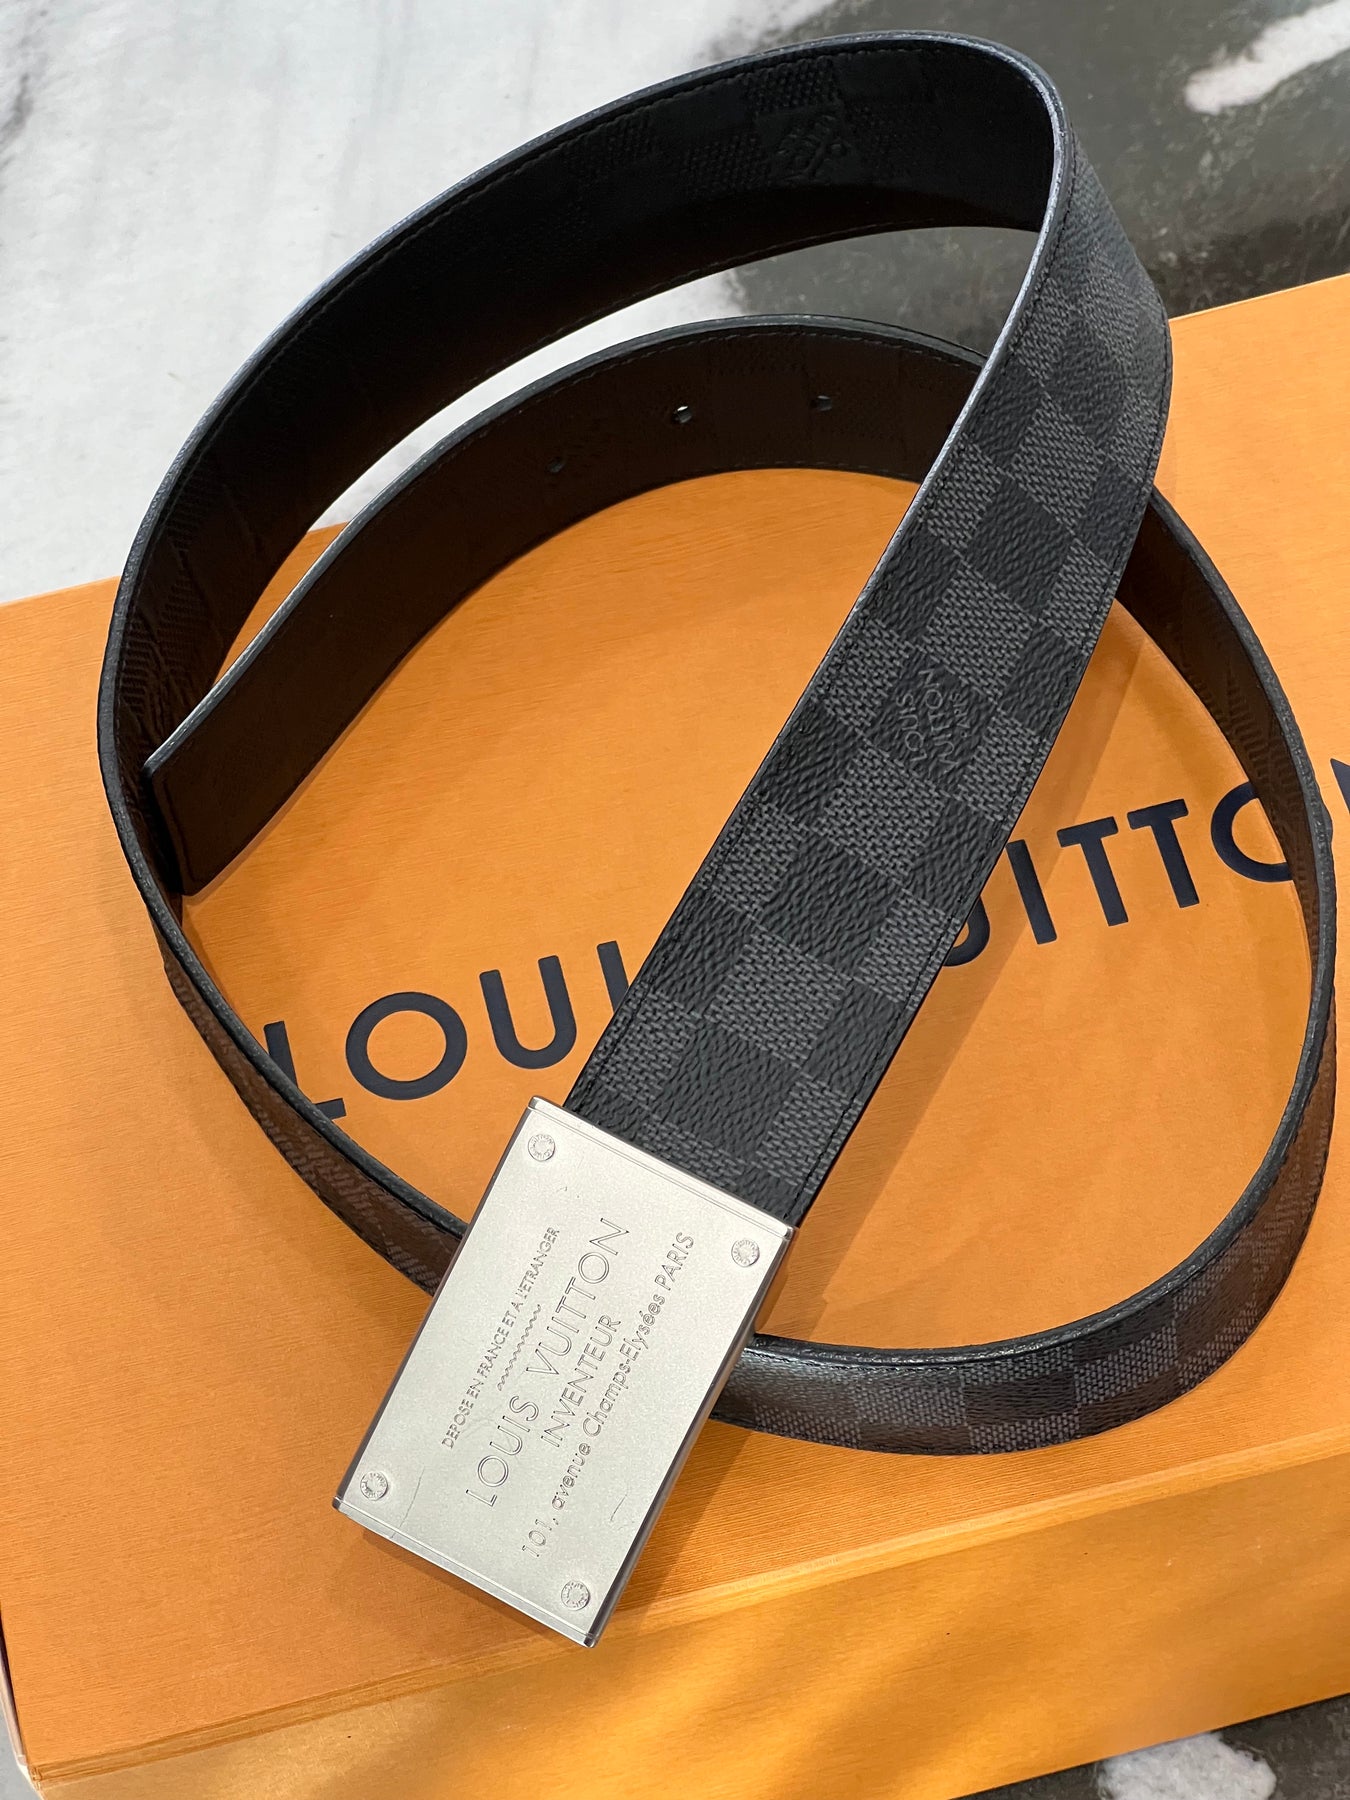 Louis Vuitton Damier Graphite Inventeur Reversible Belt